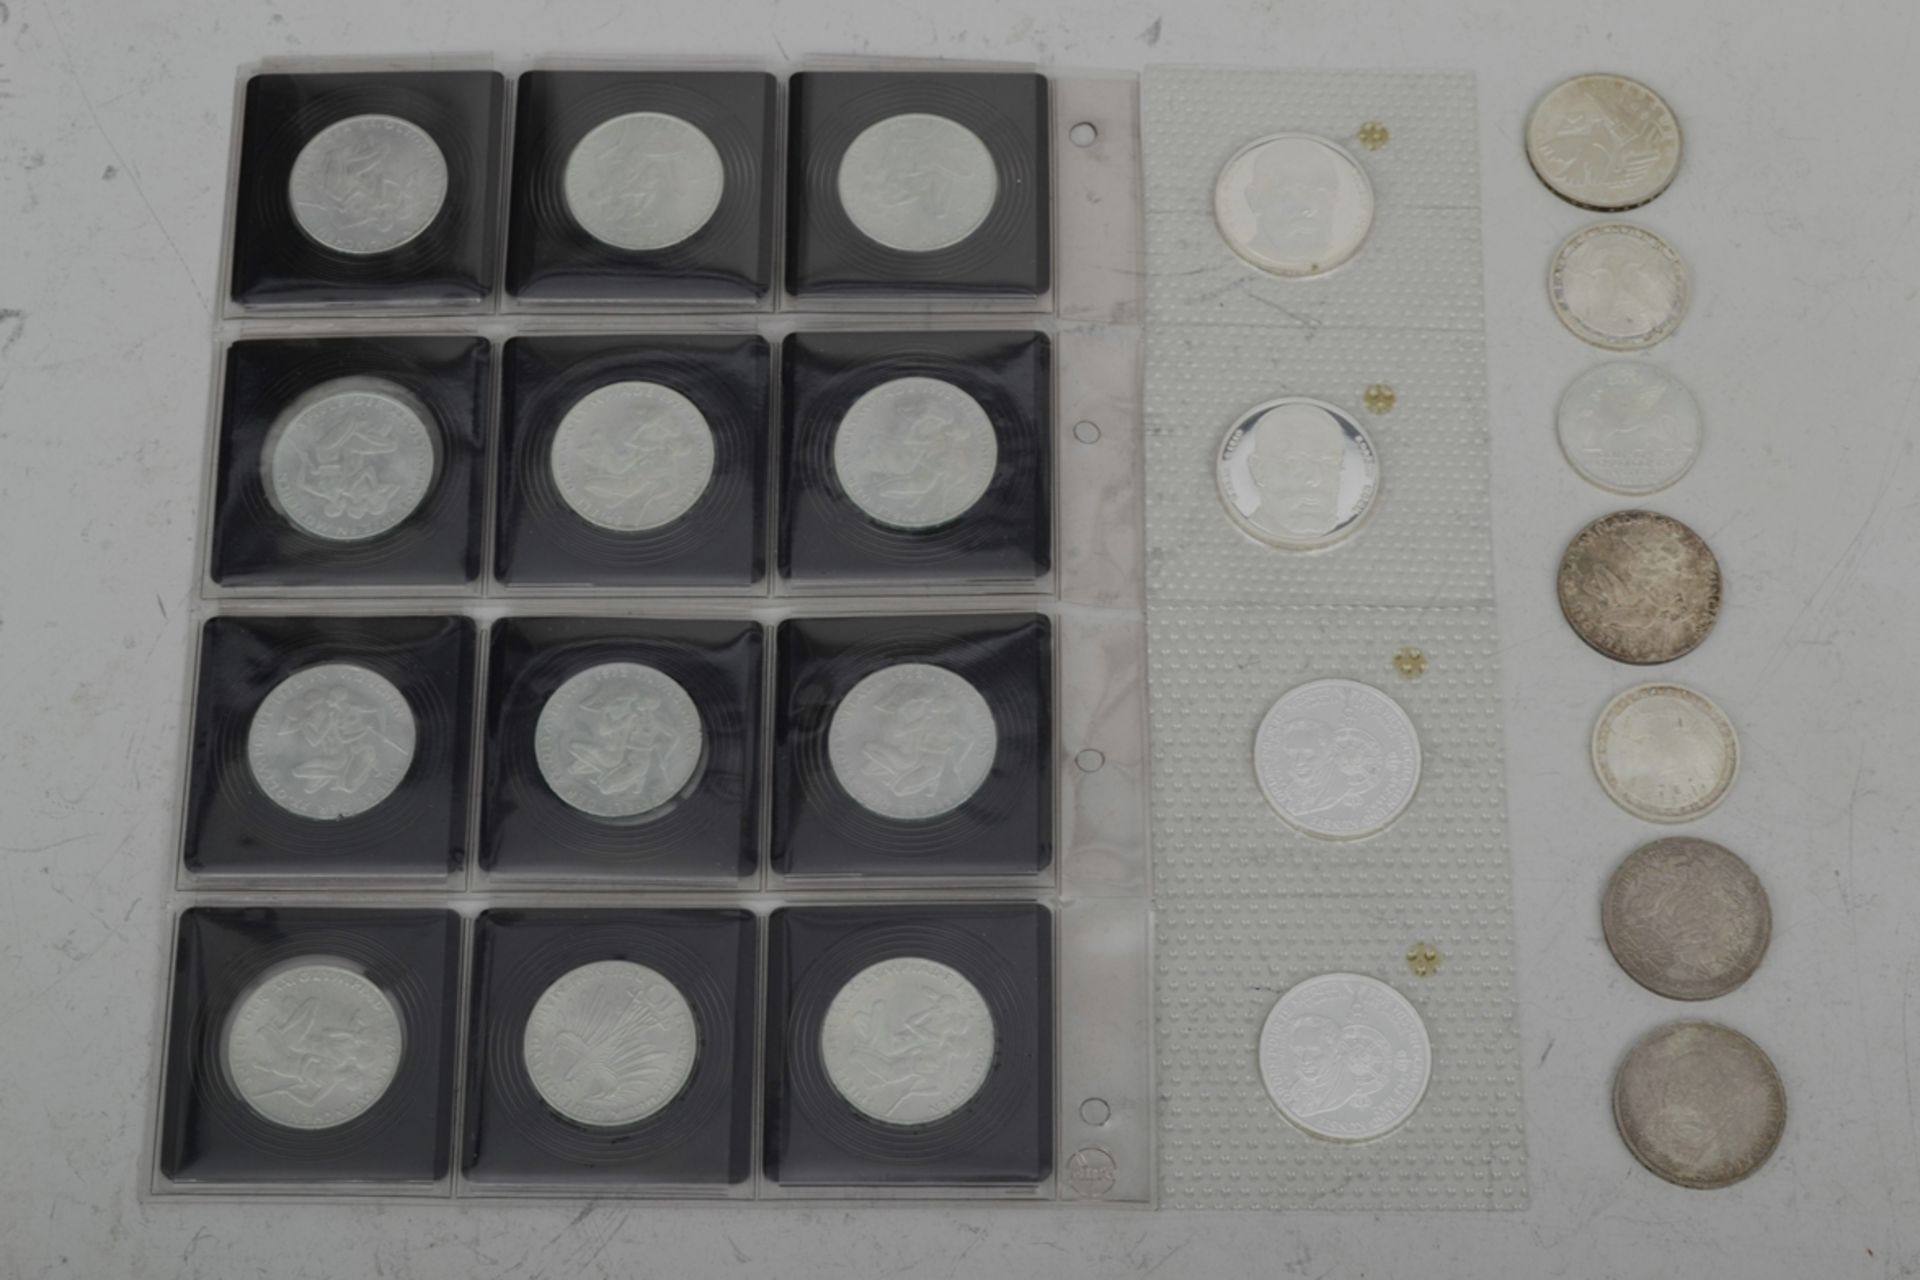 110tlg. Sammlung von 41 x 5 DM und 69 x 10 DM Münzen, teilweise Silber, zusammen ca. 895,- DM. Vers - Bild 8 aus 9